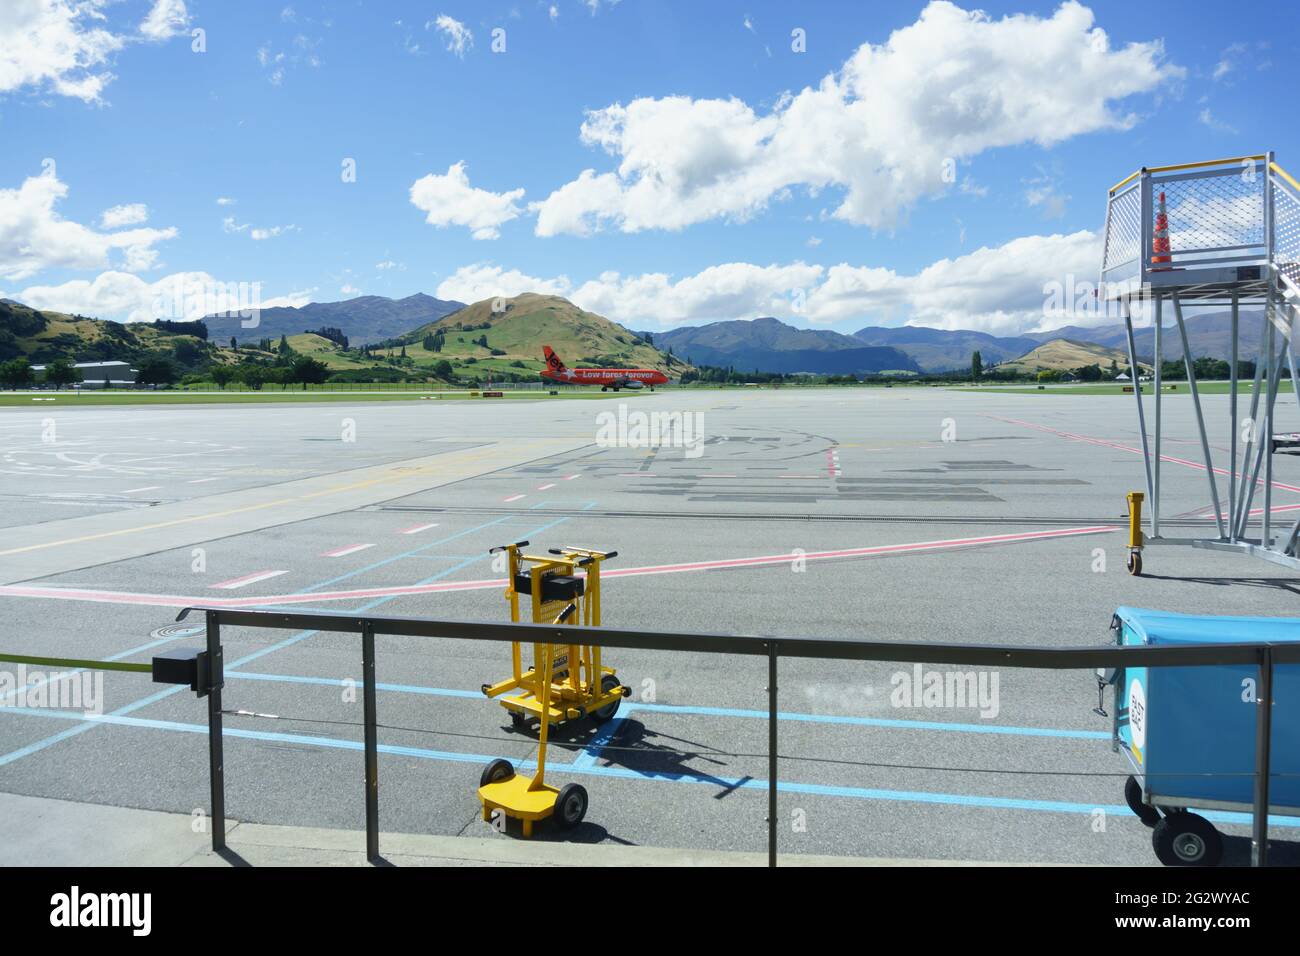 Queenstown, Nouvelle-Zélande - mars 6 2015 ; les montagnes forment le décor d'un avion de couleur orange arrivant à l'aéroport à distance en traversant le tarmac. Banque D'Images